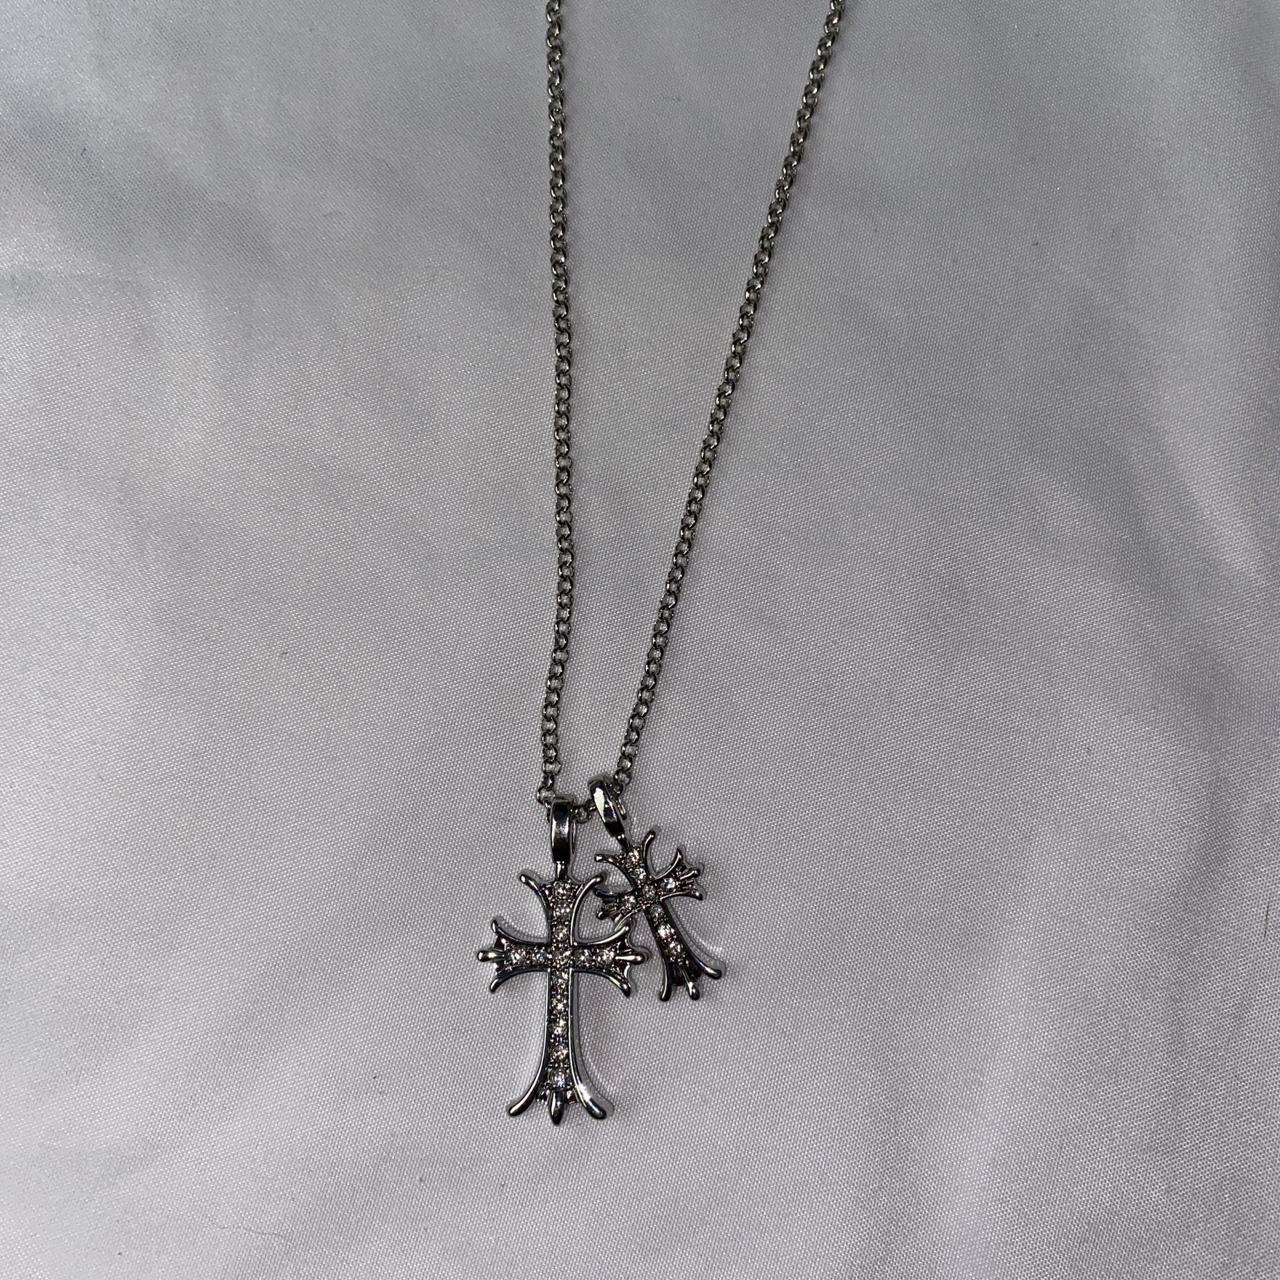 double cross necklace - rhinestone inside crosses -... - Depop